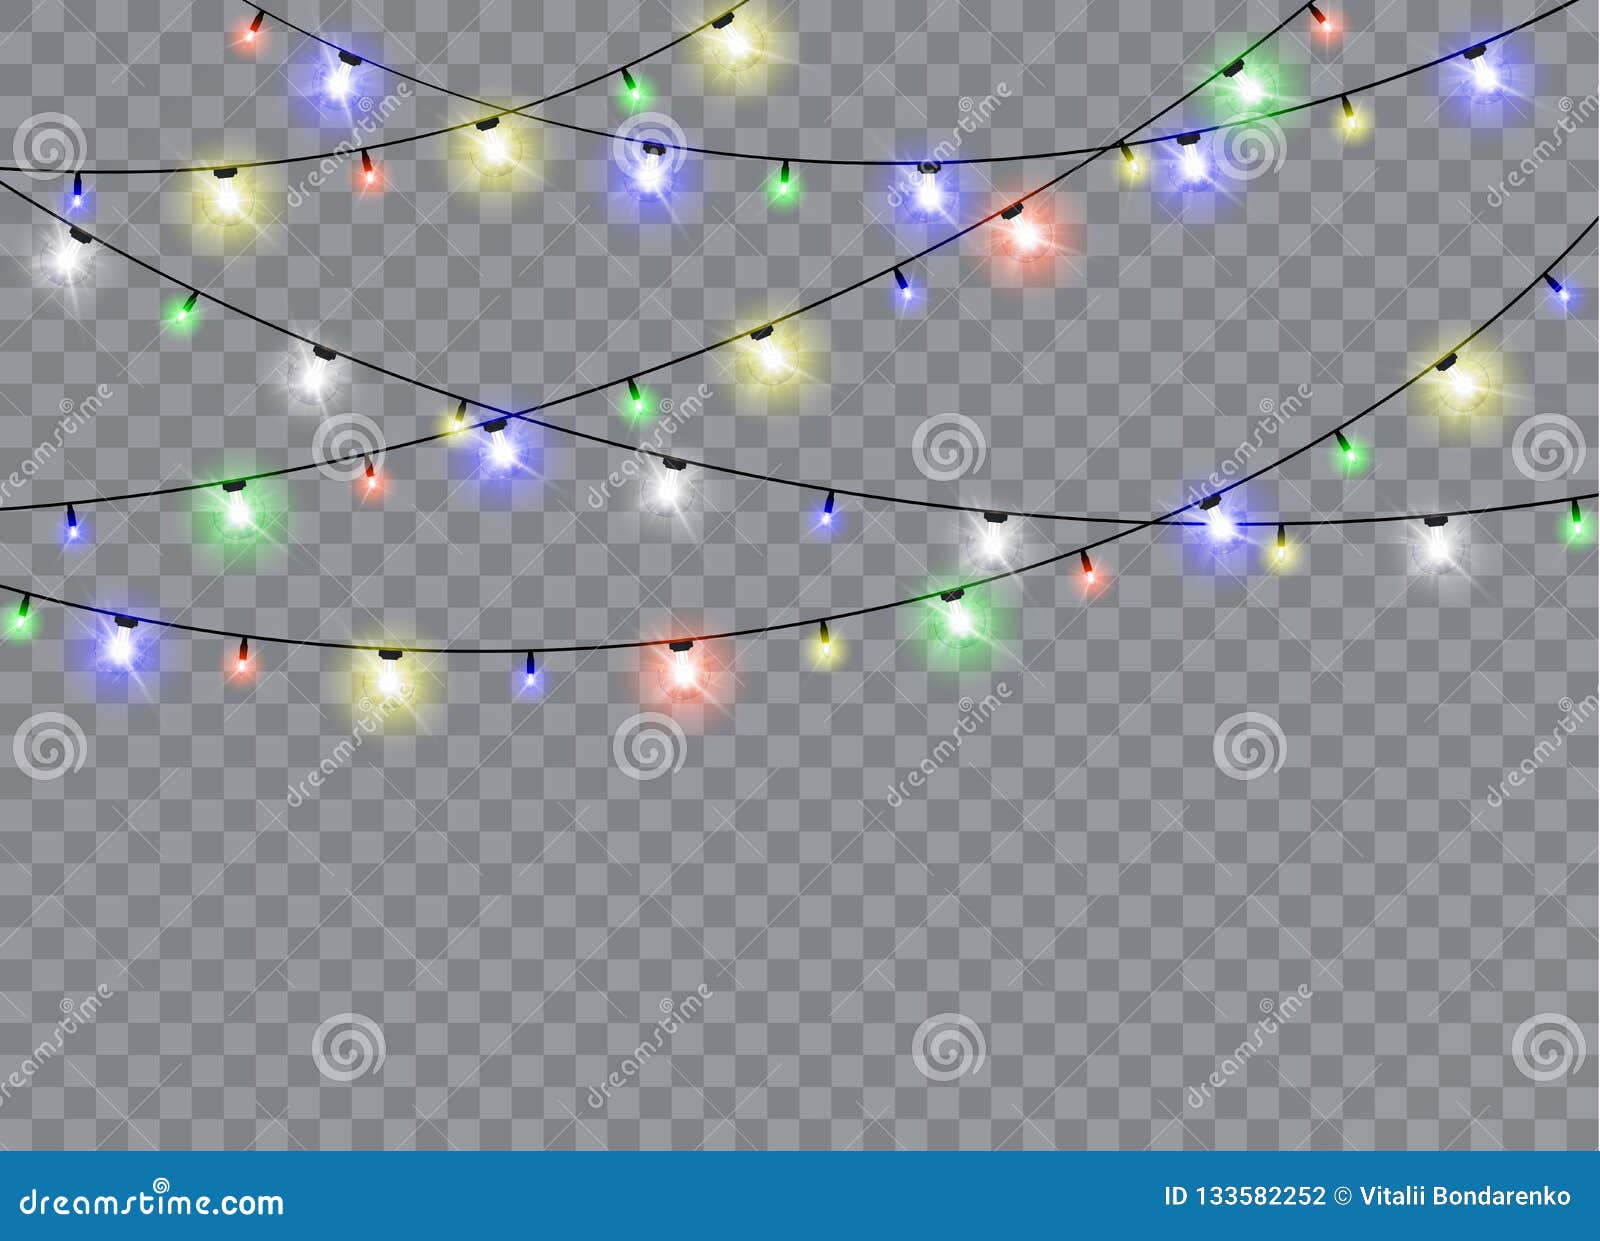 Khám phá không gian Giáng sinh tuyệt đẹp với đèn Giáng sinh trong nền hình nền trong suốt. Vector hình ảnh cho thấy sự khéo léo và tinh tế trong thiết kế, tạo nên không khí lễ hội đầy sắc màu và ấm áp. Hãy đến và tận hưởng khoảnh khắc thú vị này!